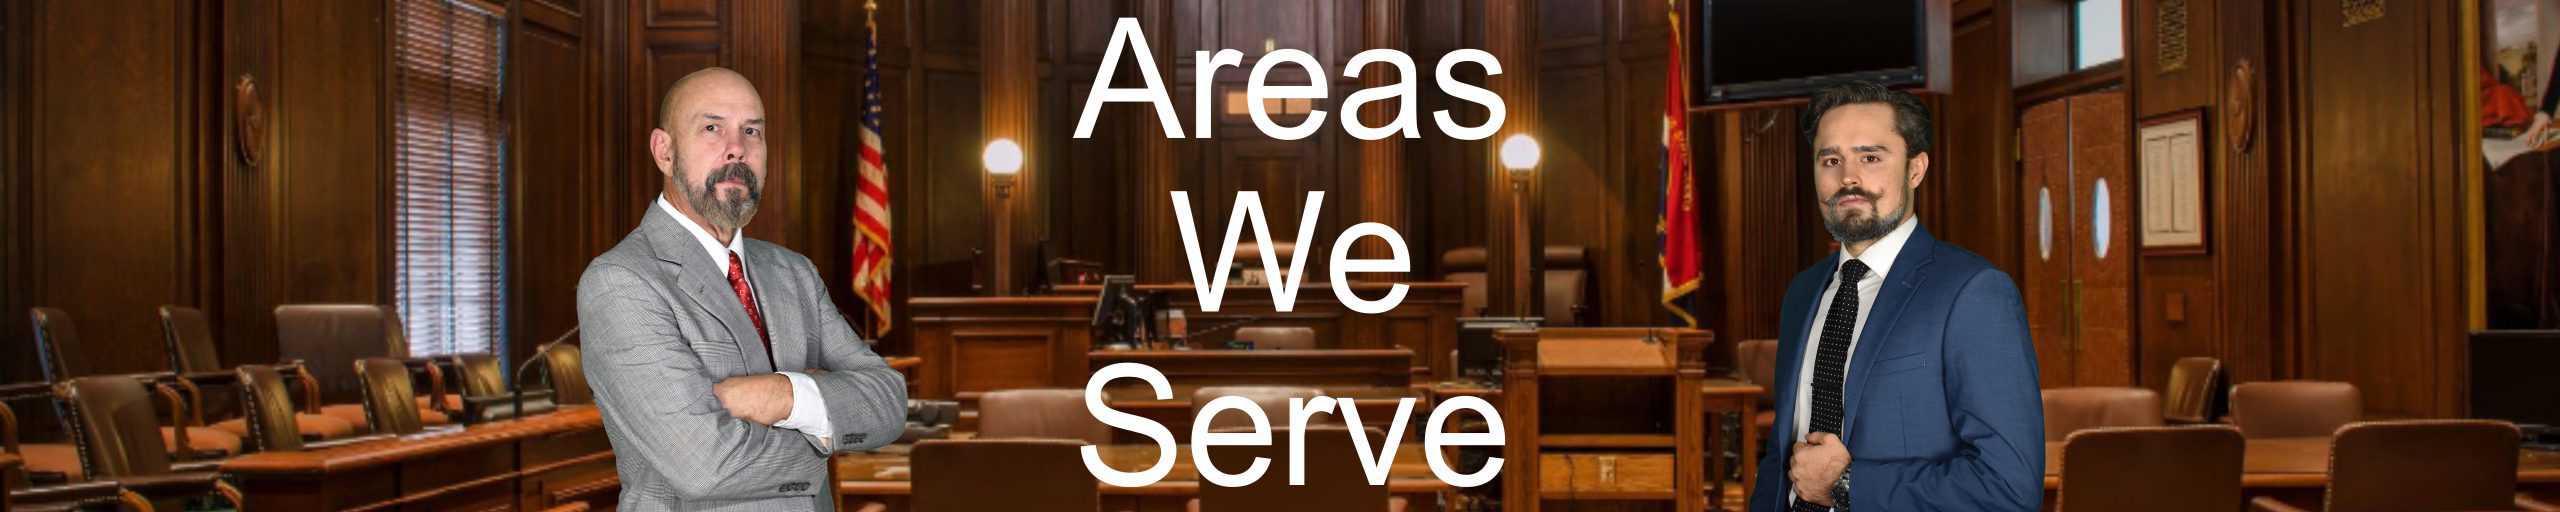 Areas-We-Serve-Georgia-South-Carolina